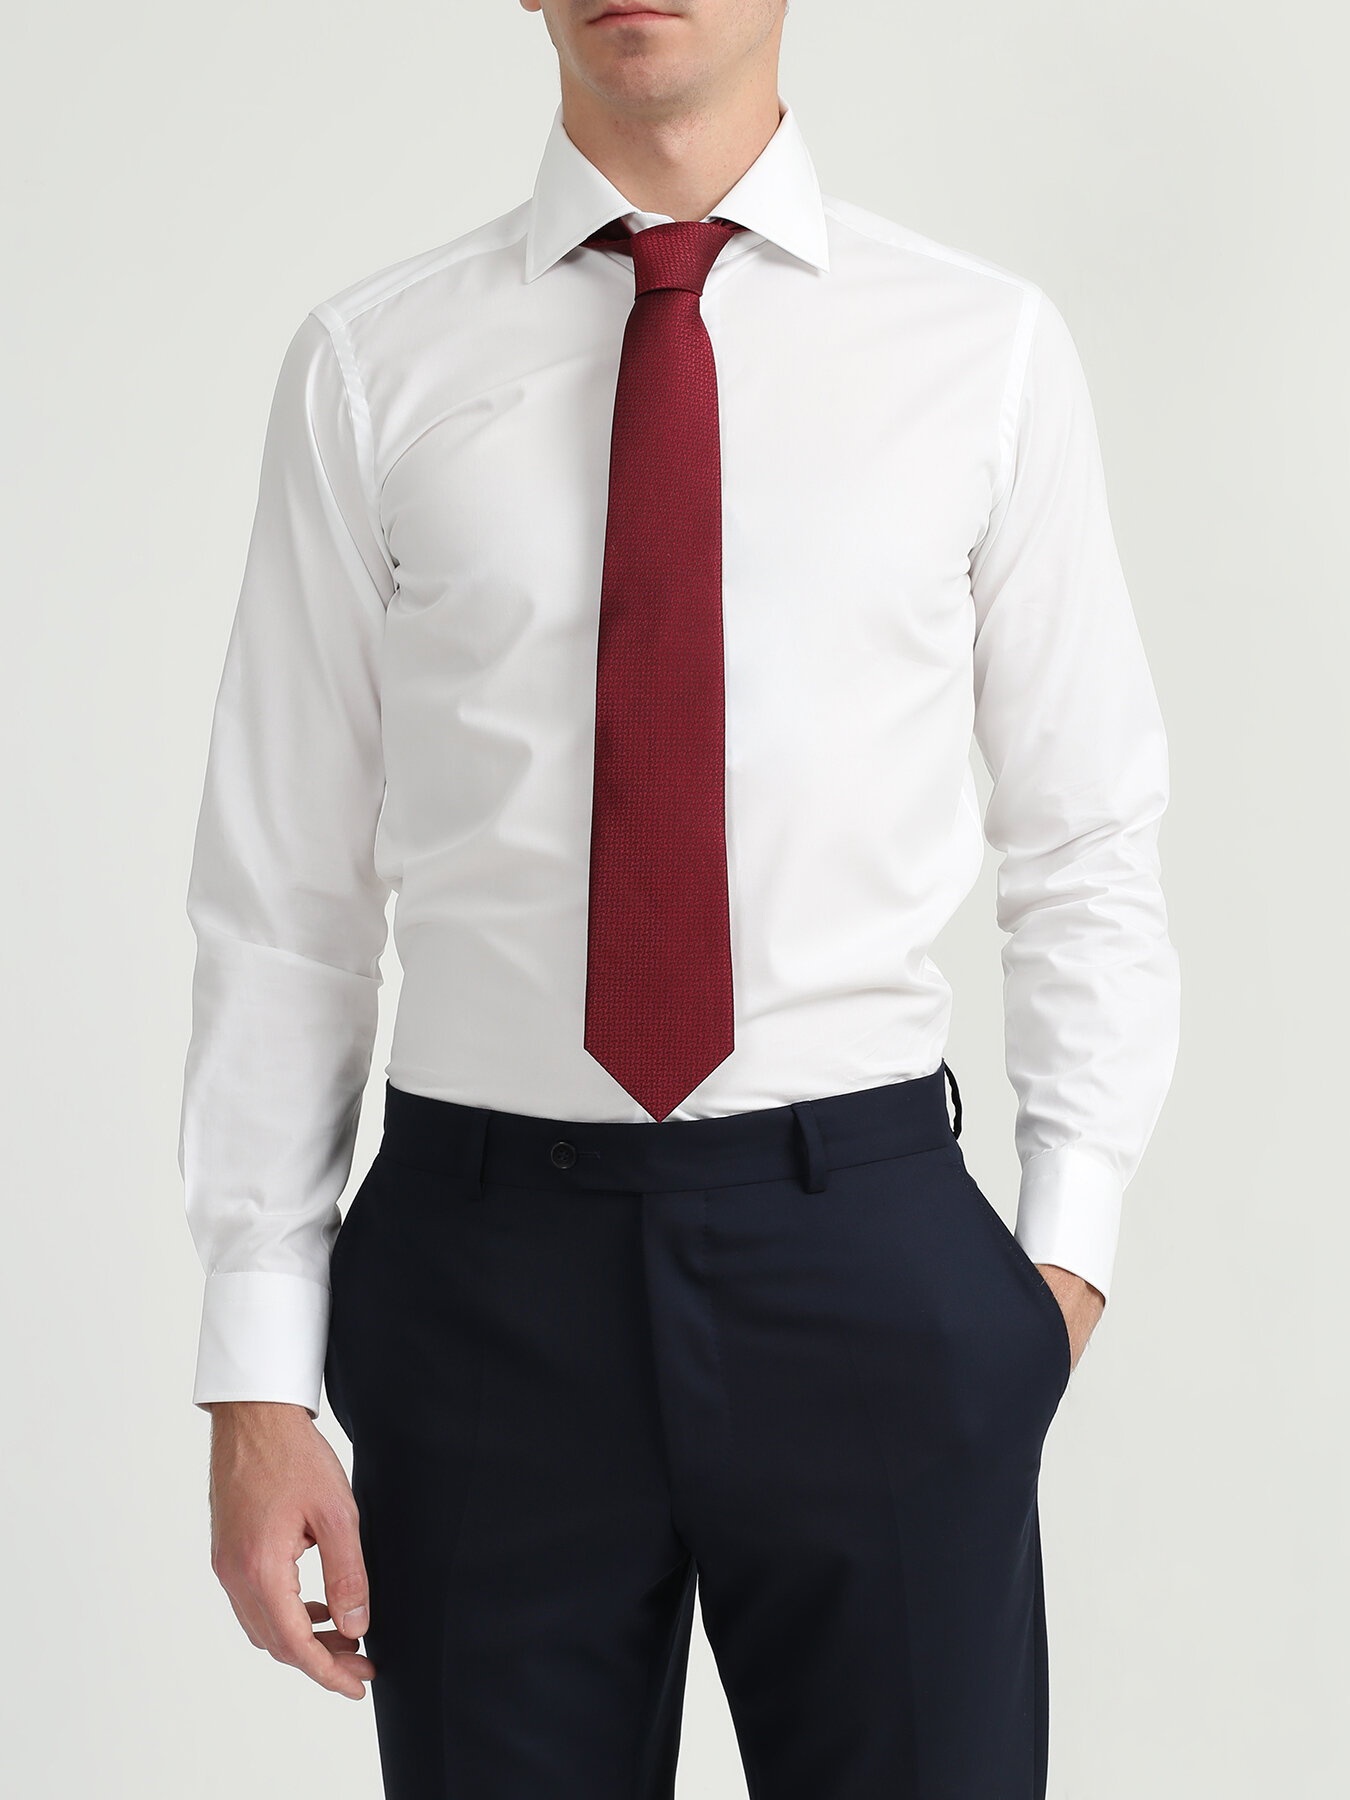 Бордовый галстук под белую рубашку